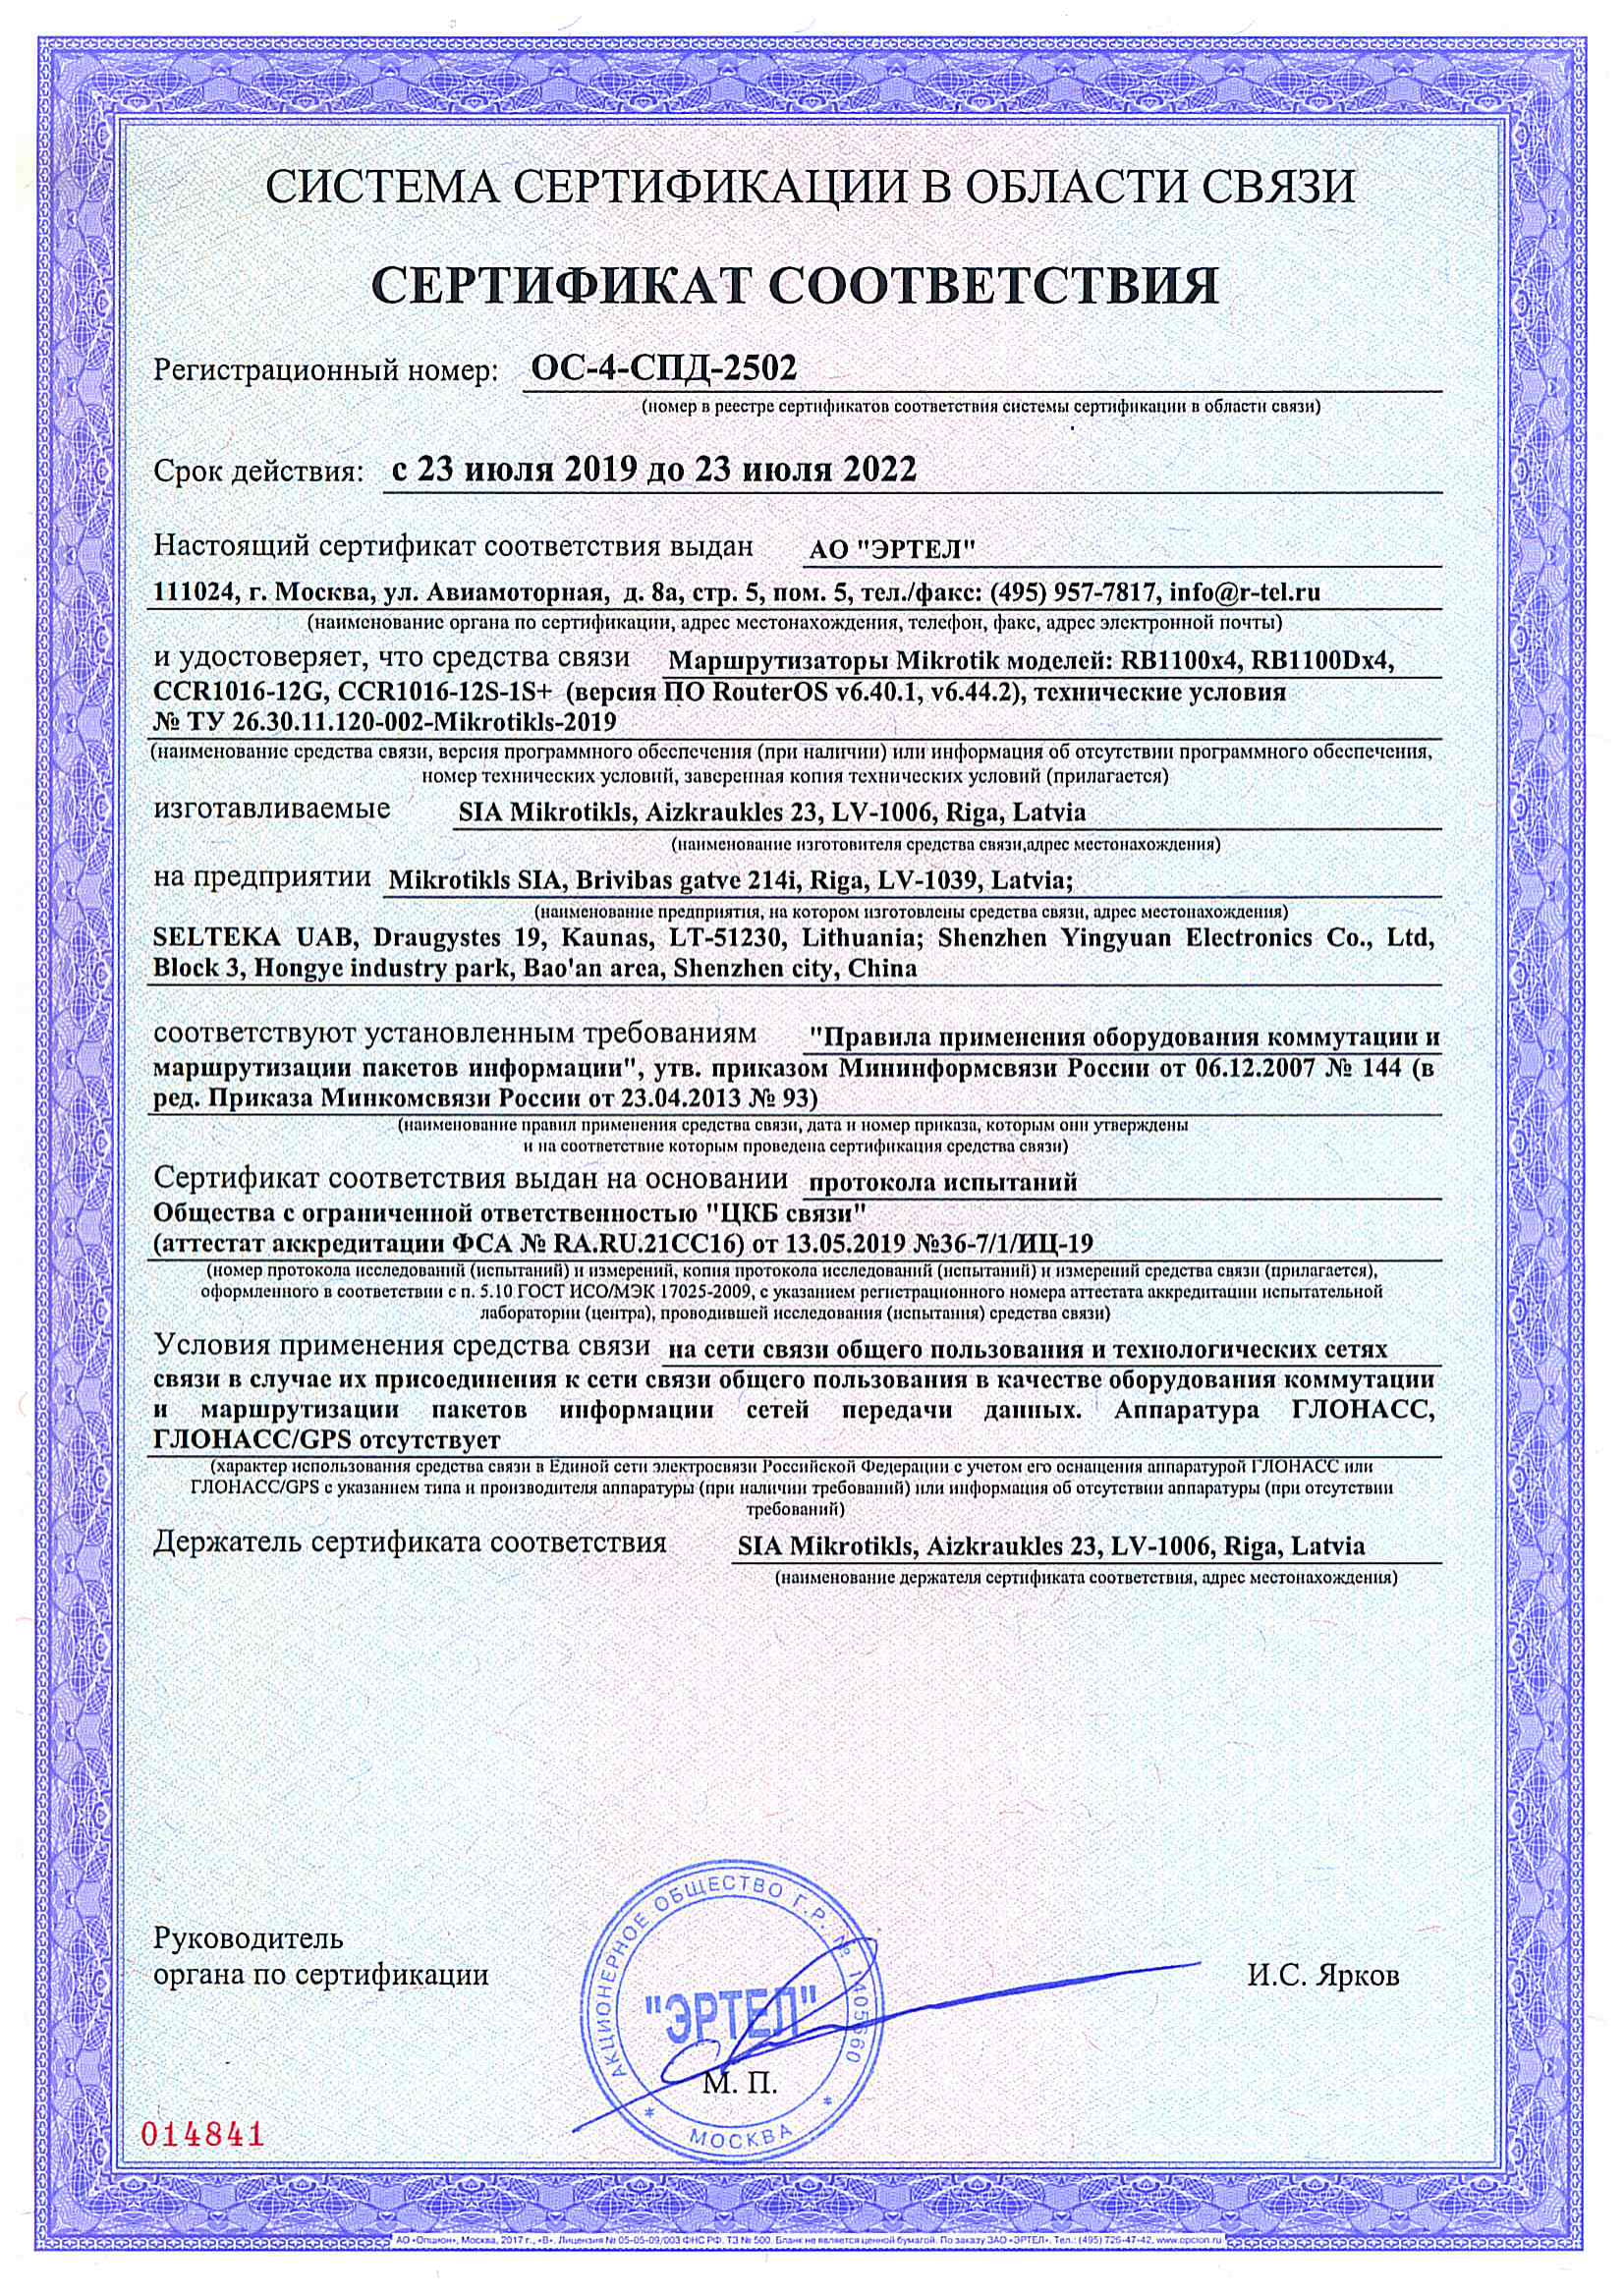 Сертификат соответствия в области связи ОС-4-СПД-2502